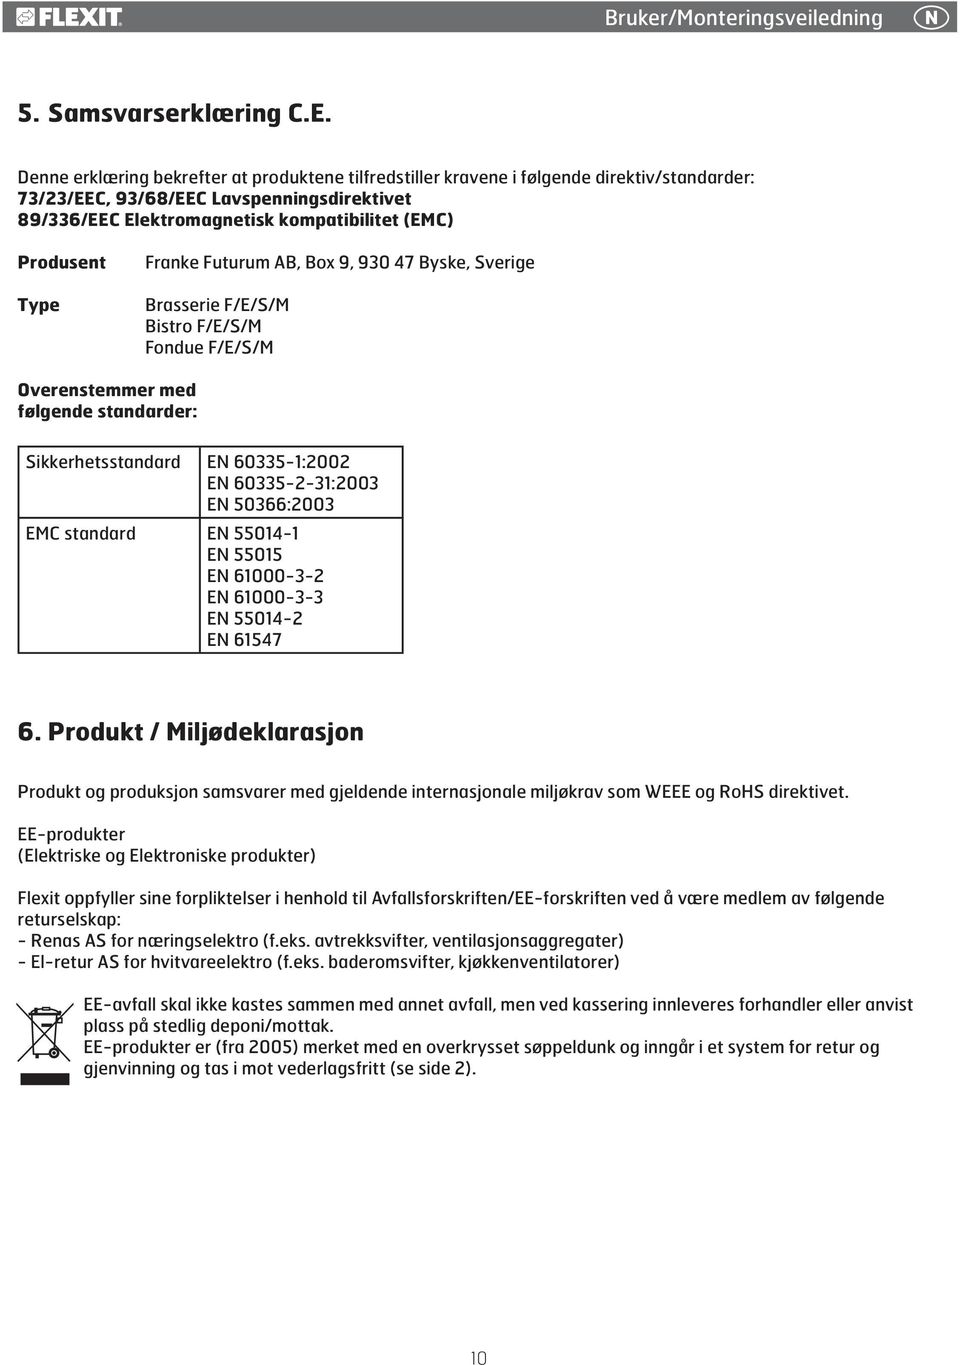 Franke Futurum AB, Box 9, 90 47 Byske, Sverige Brasserie F/E/S/M Bistro F/E/S/M Fondue F/E/S/M Overenstemmer med følgende standarder: Sikkerhetsstandard EN 605-:00 EN 605--:00 EN 5066:00 EMC standard